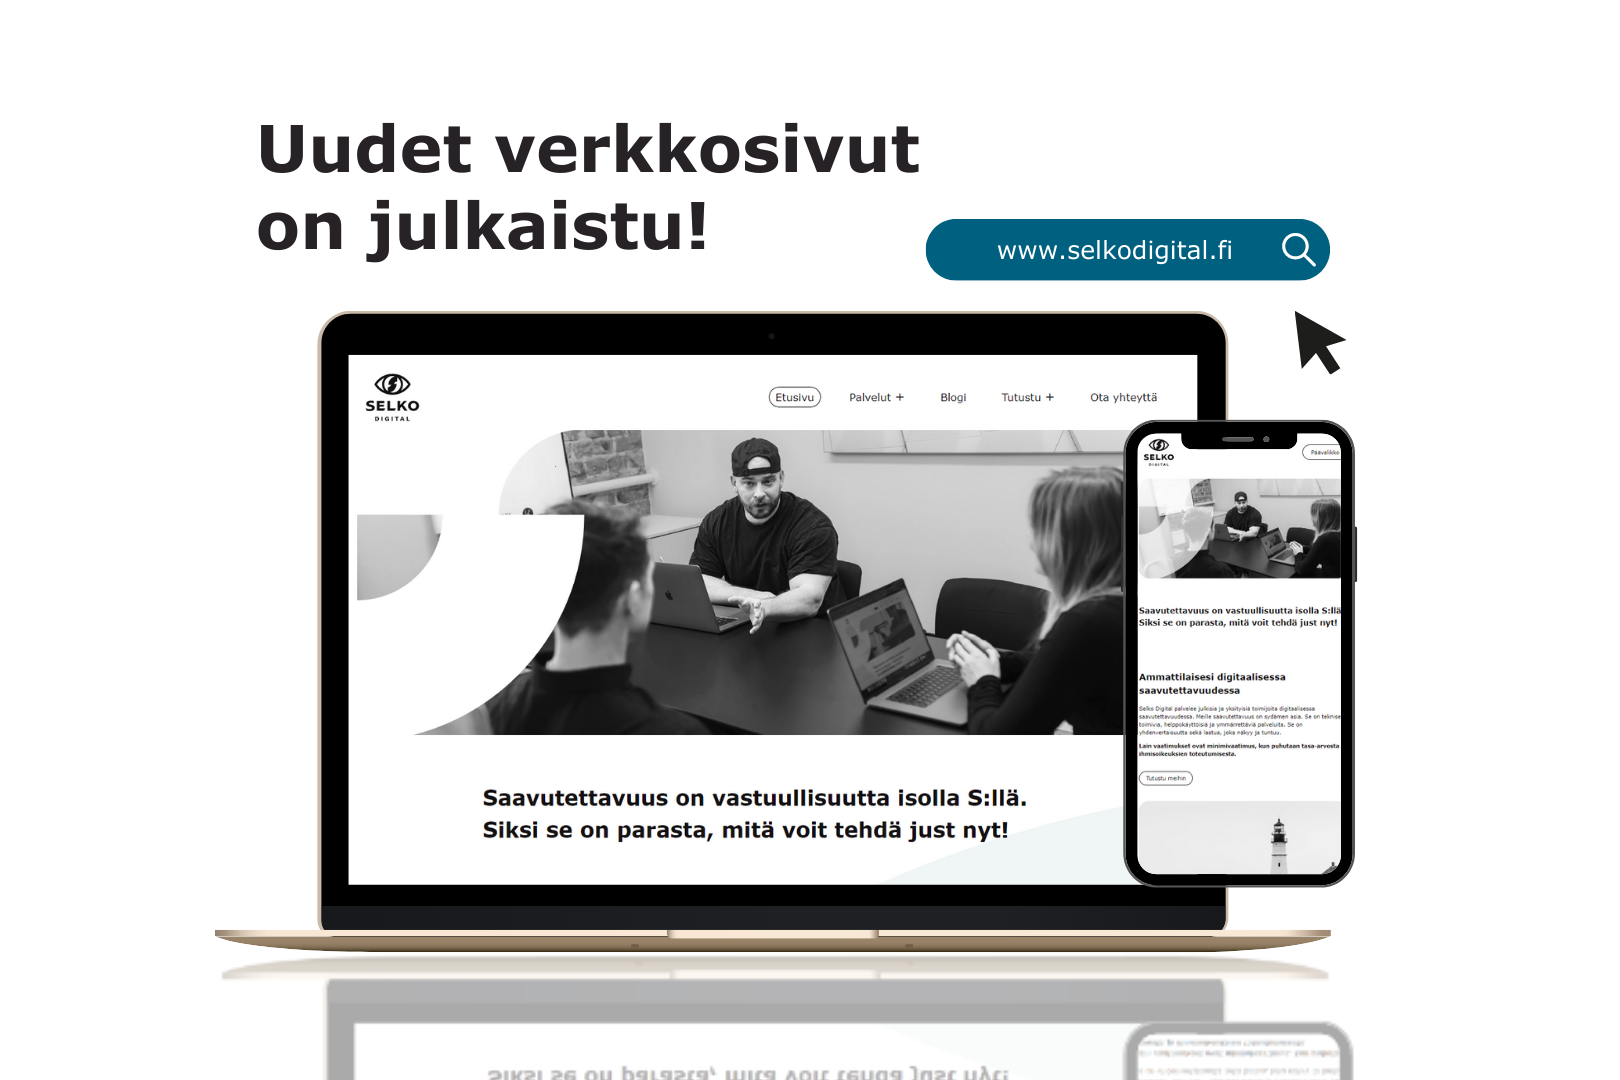 Tietokoneen ja puhelimen näytöllä Selko Digitalin uudet verkkosivut, niiden yläpuolella on tekstit: Uudet verkkosivut on julkaistu! www.selkodigital.fi.